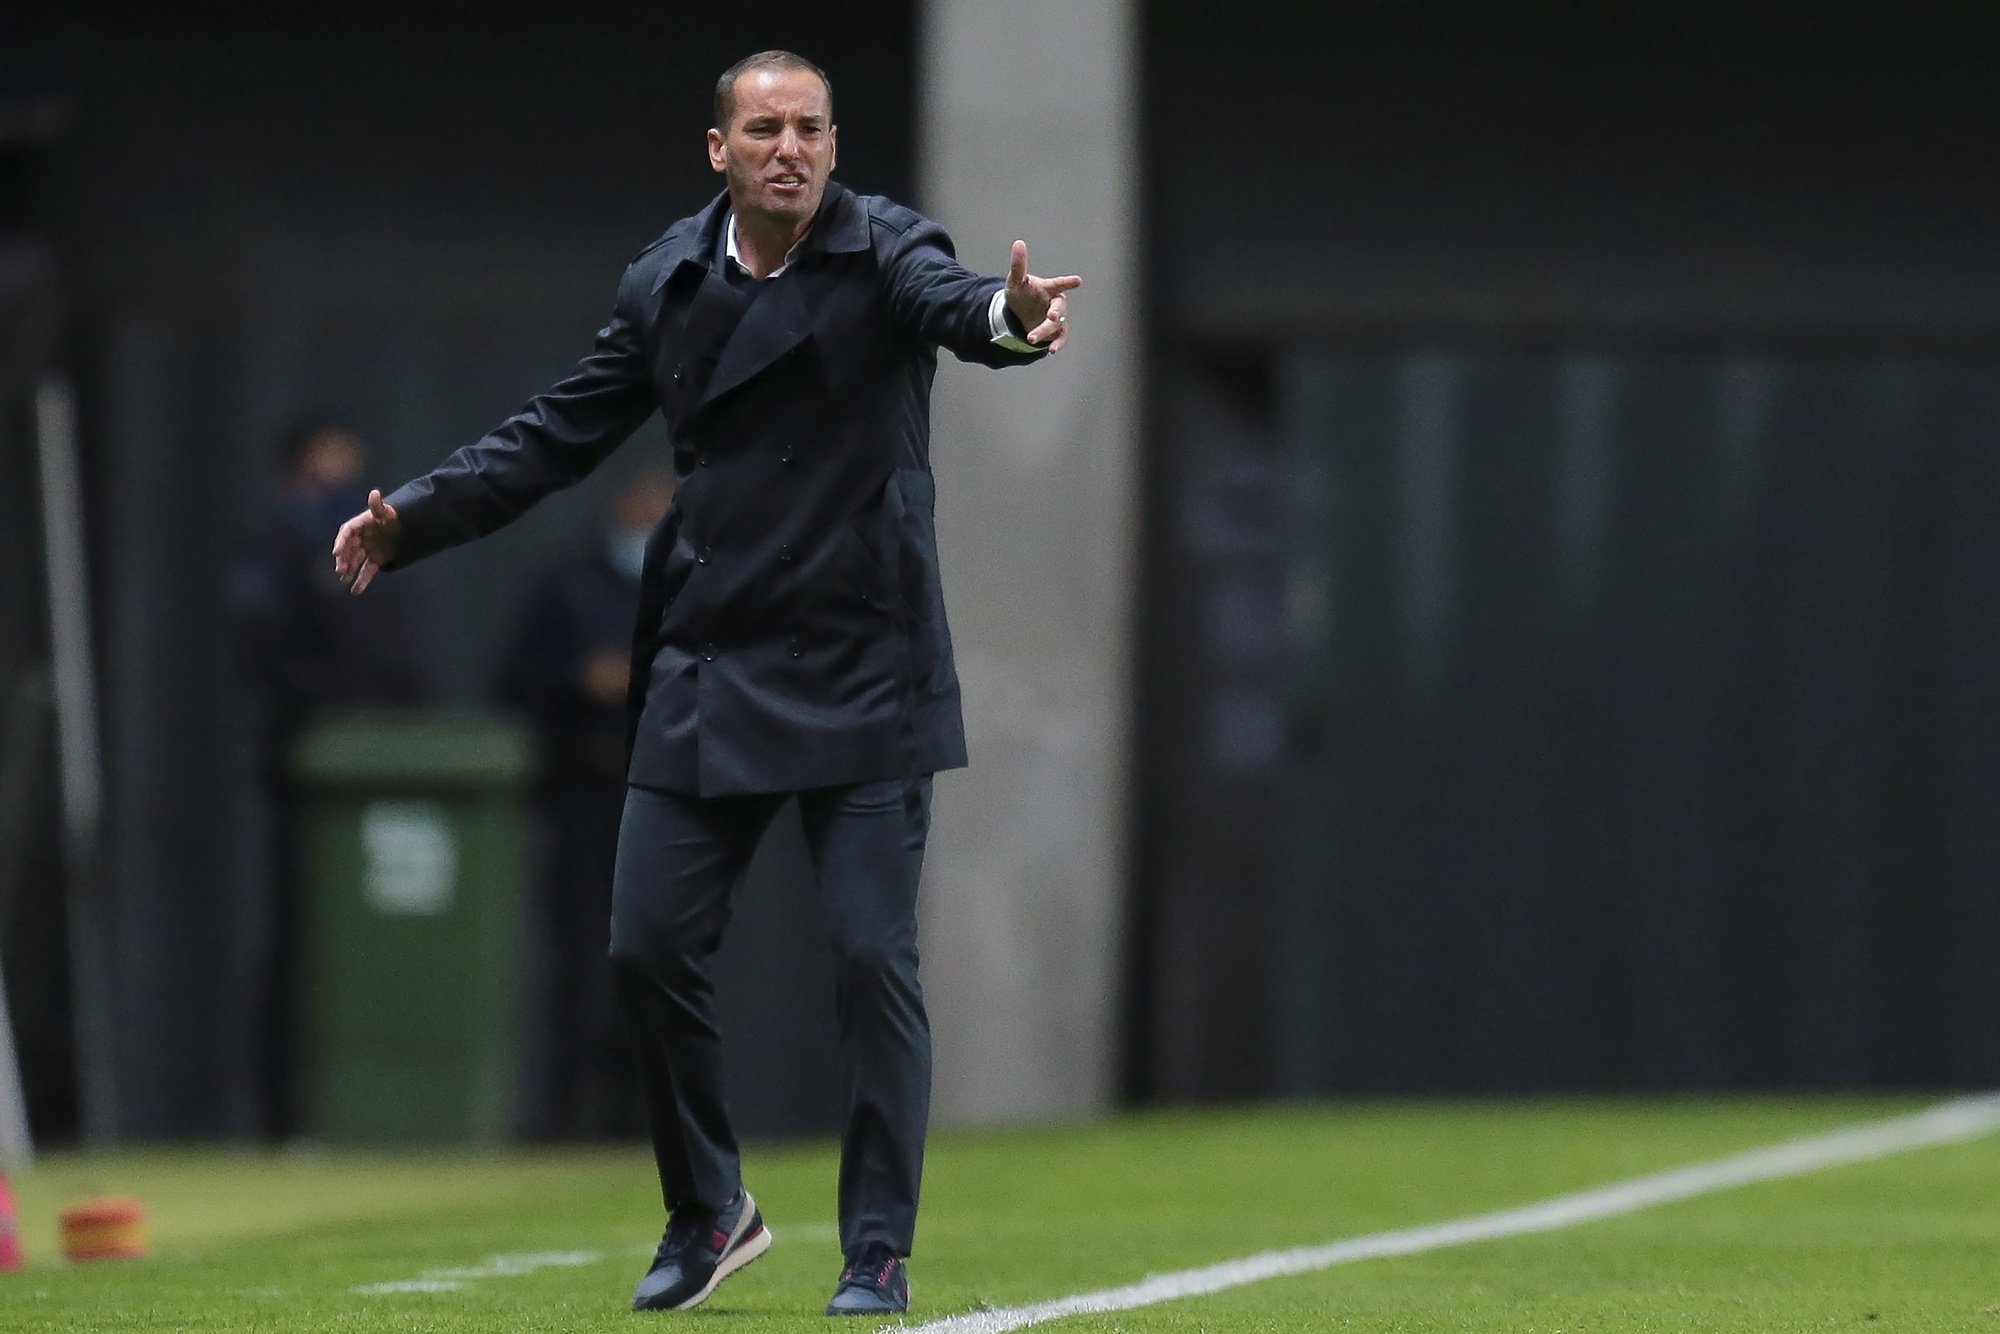 O treinador do Belenenses SAD, Petit, reage durante o jogo da Primeira Liga de Futebol contra o Boavista, disputado no Estádio do Bessa, no Porto, 29 de novembro de 2020. MANUEL FERNANDO ARAÚJO/LUSA